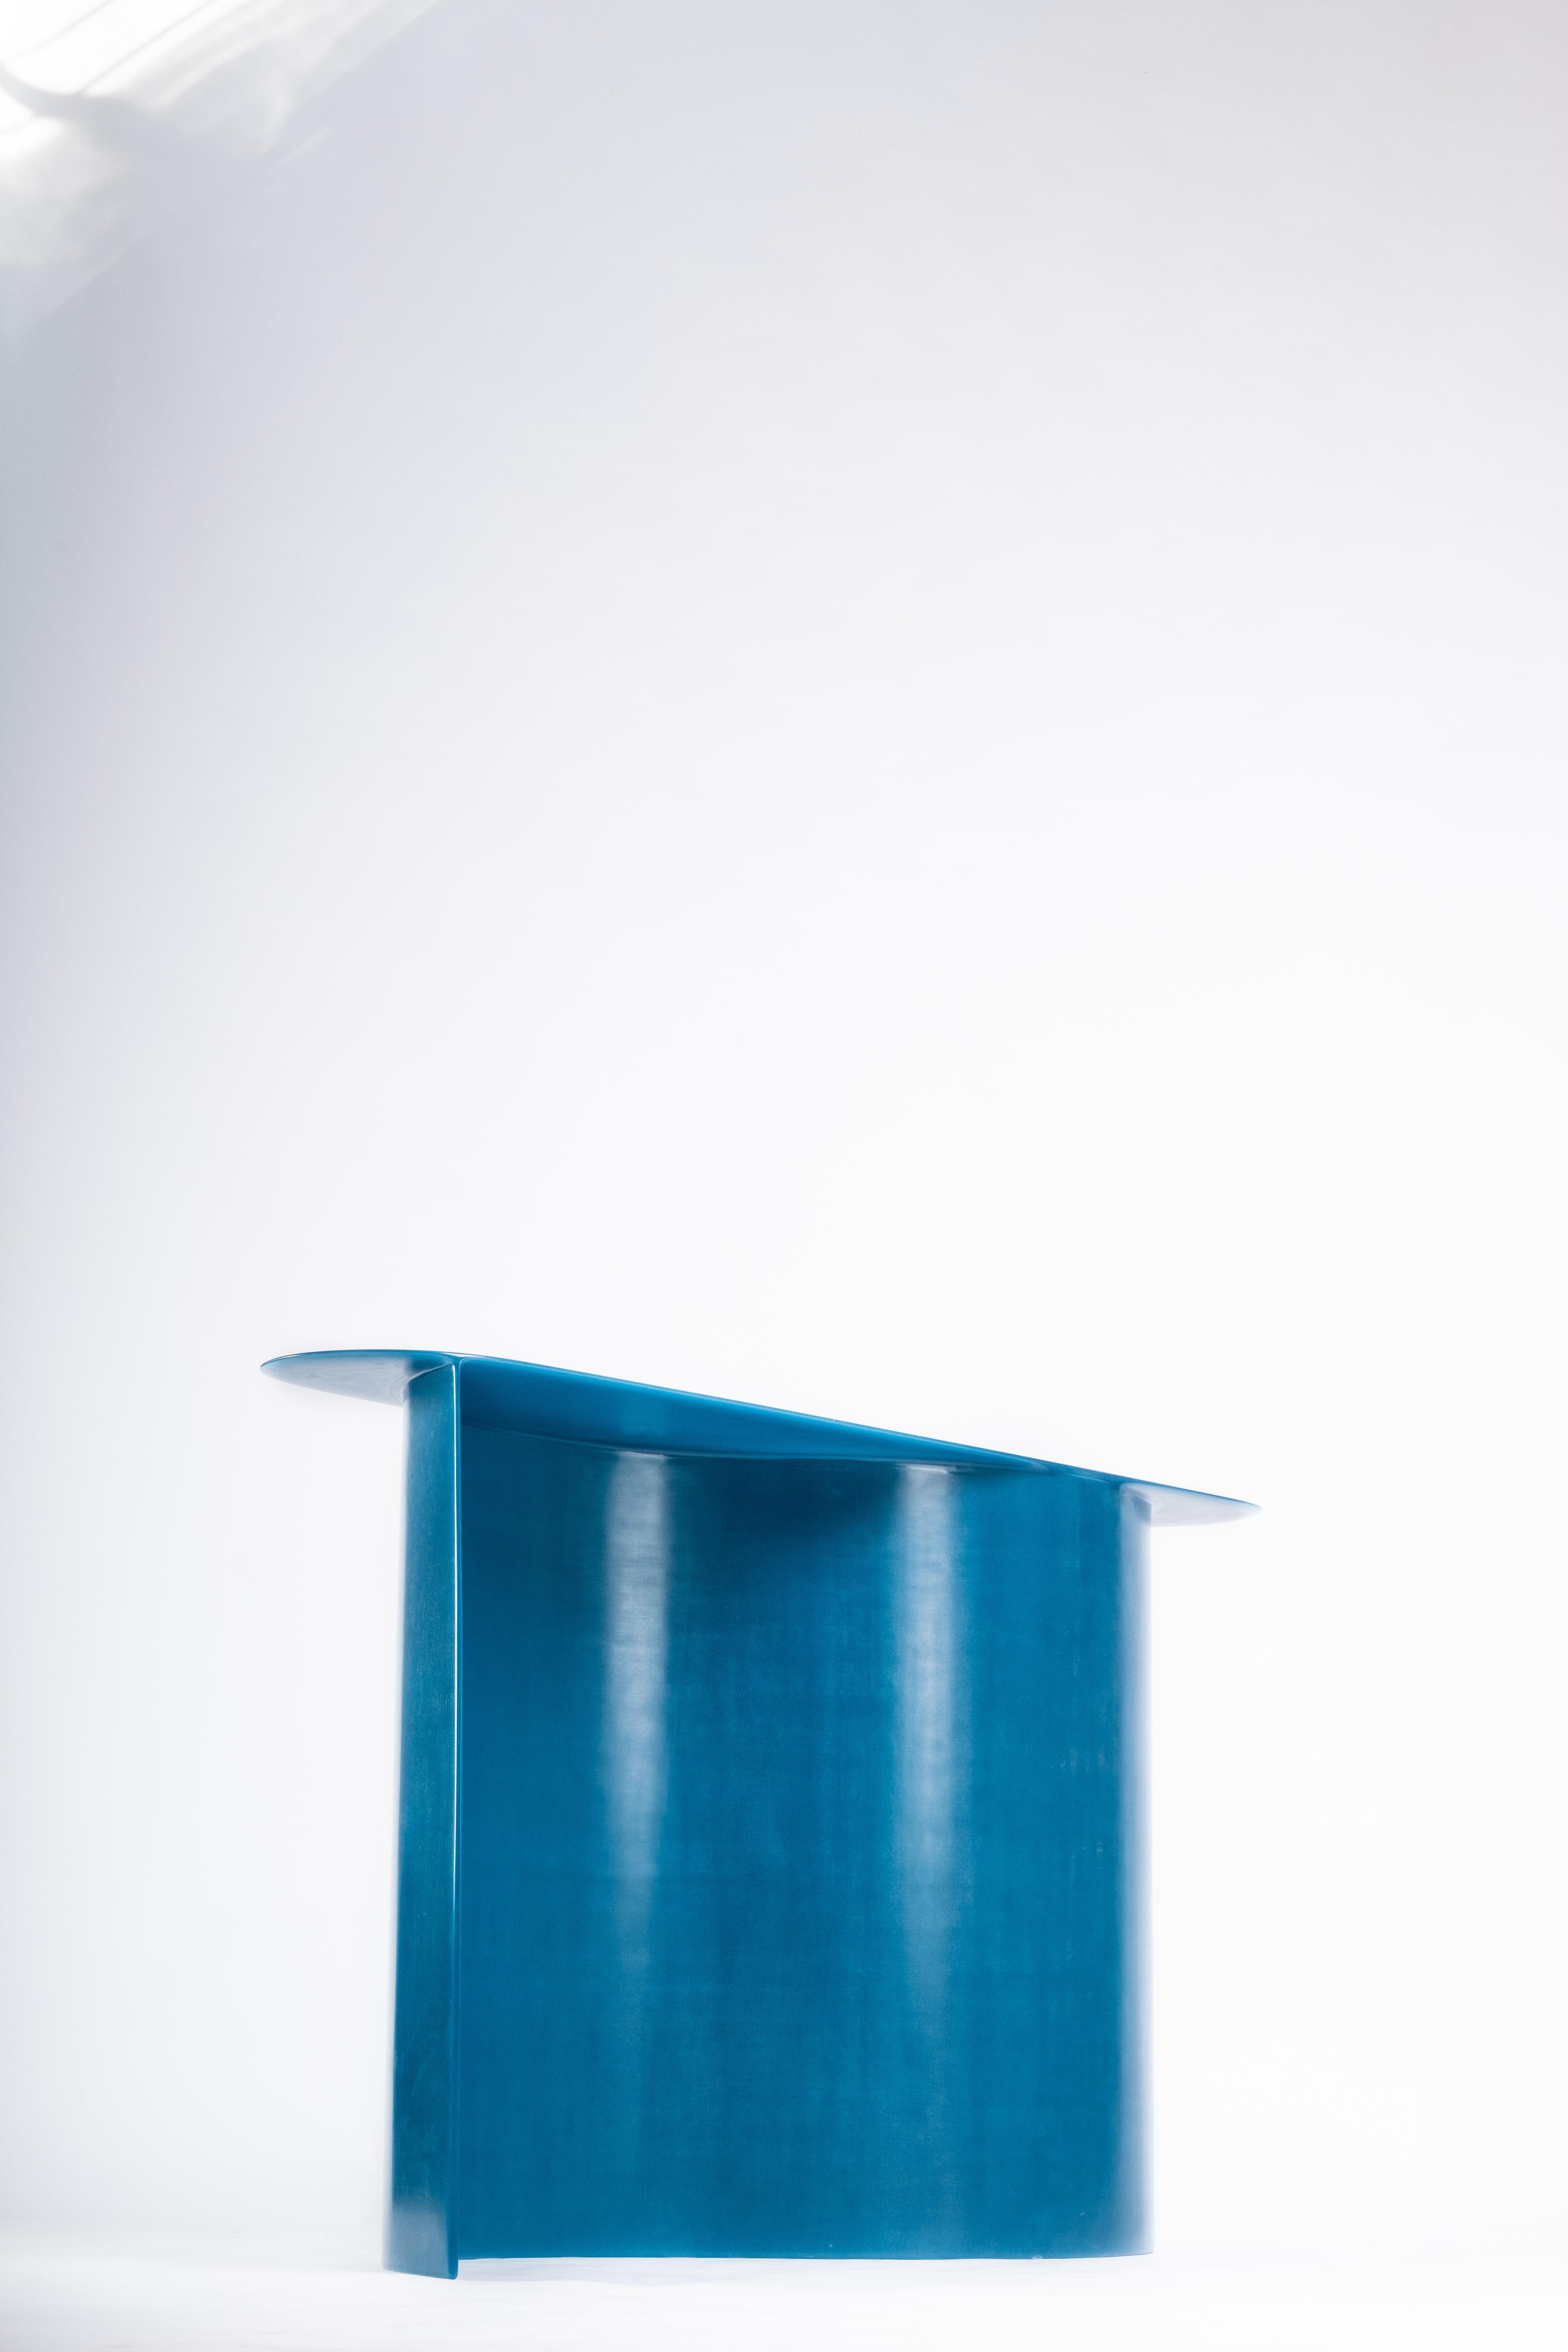 Console contemporaine en fibre de verre bleue, Nouvelle vague, de Lukas Cober Neuf à 1204, CH